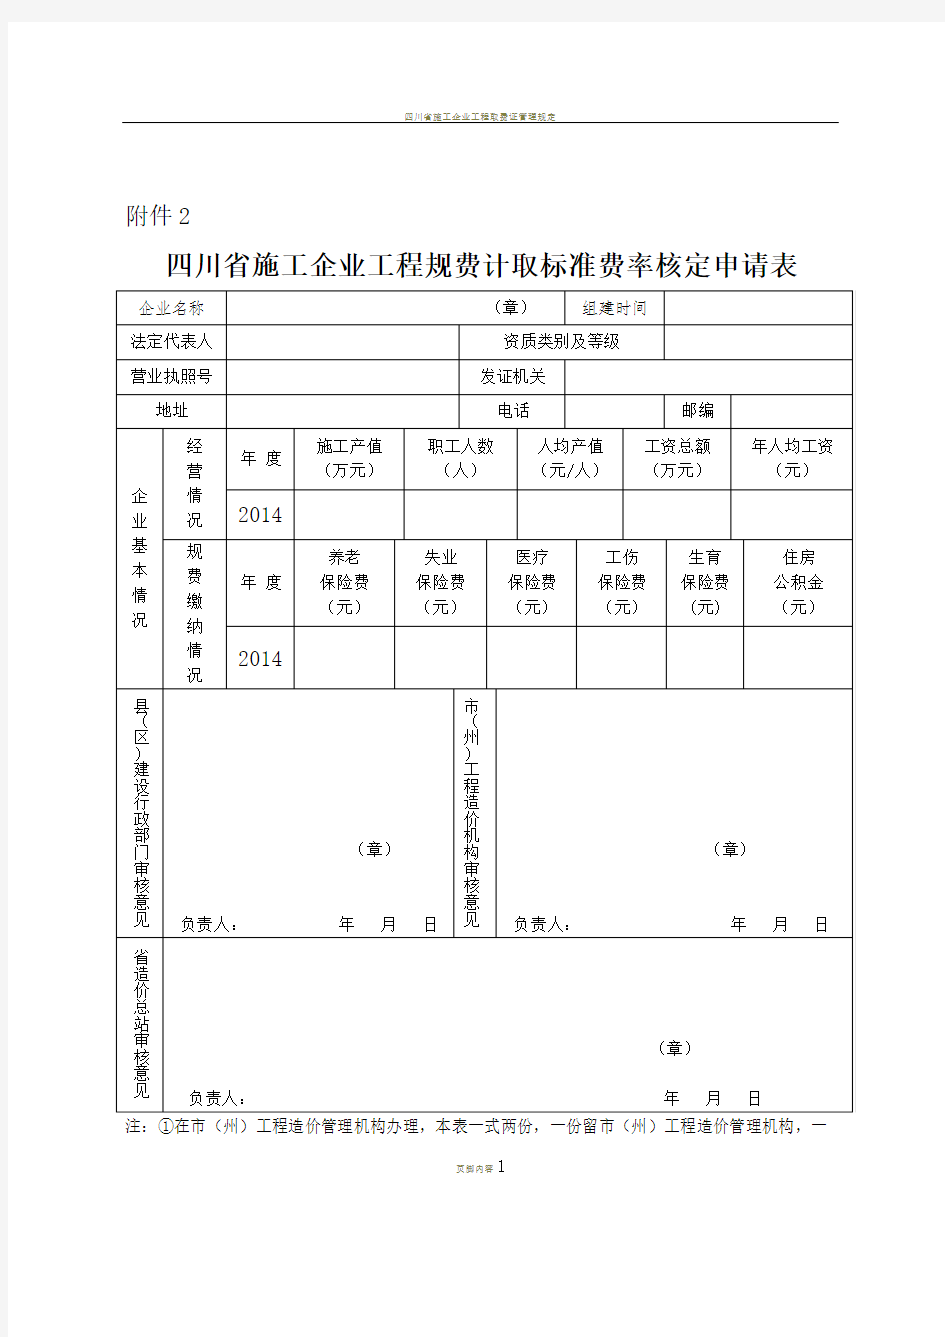 四川省施工企业工程规费计取标准费率核定申请表